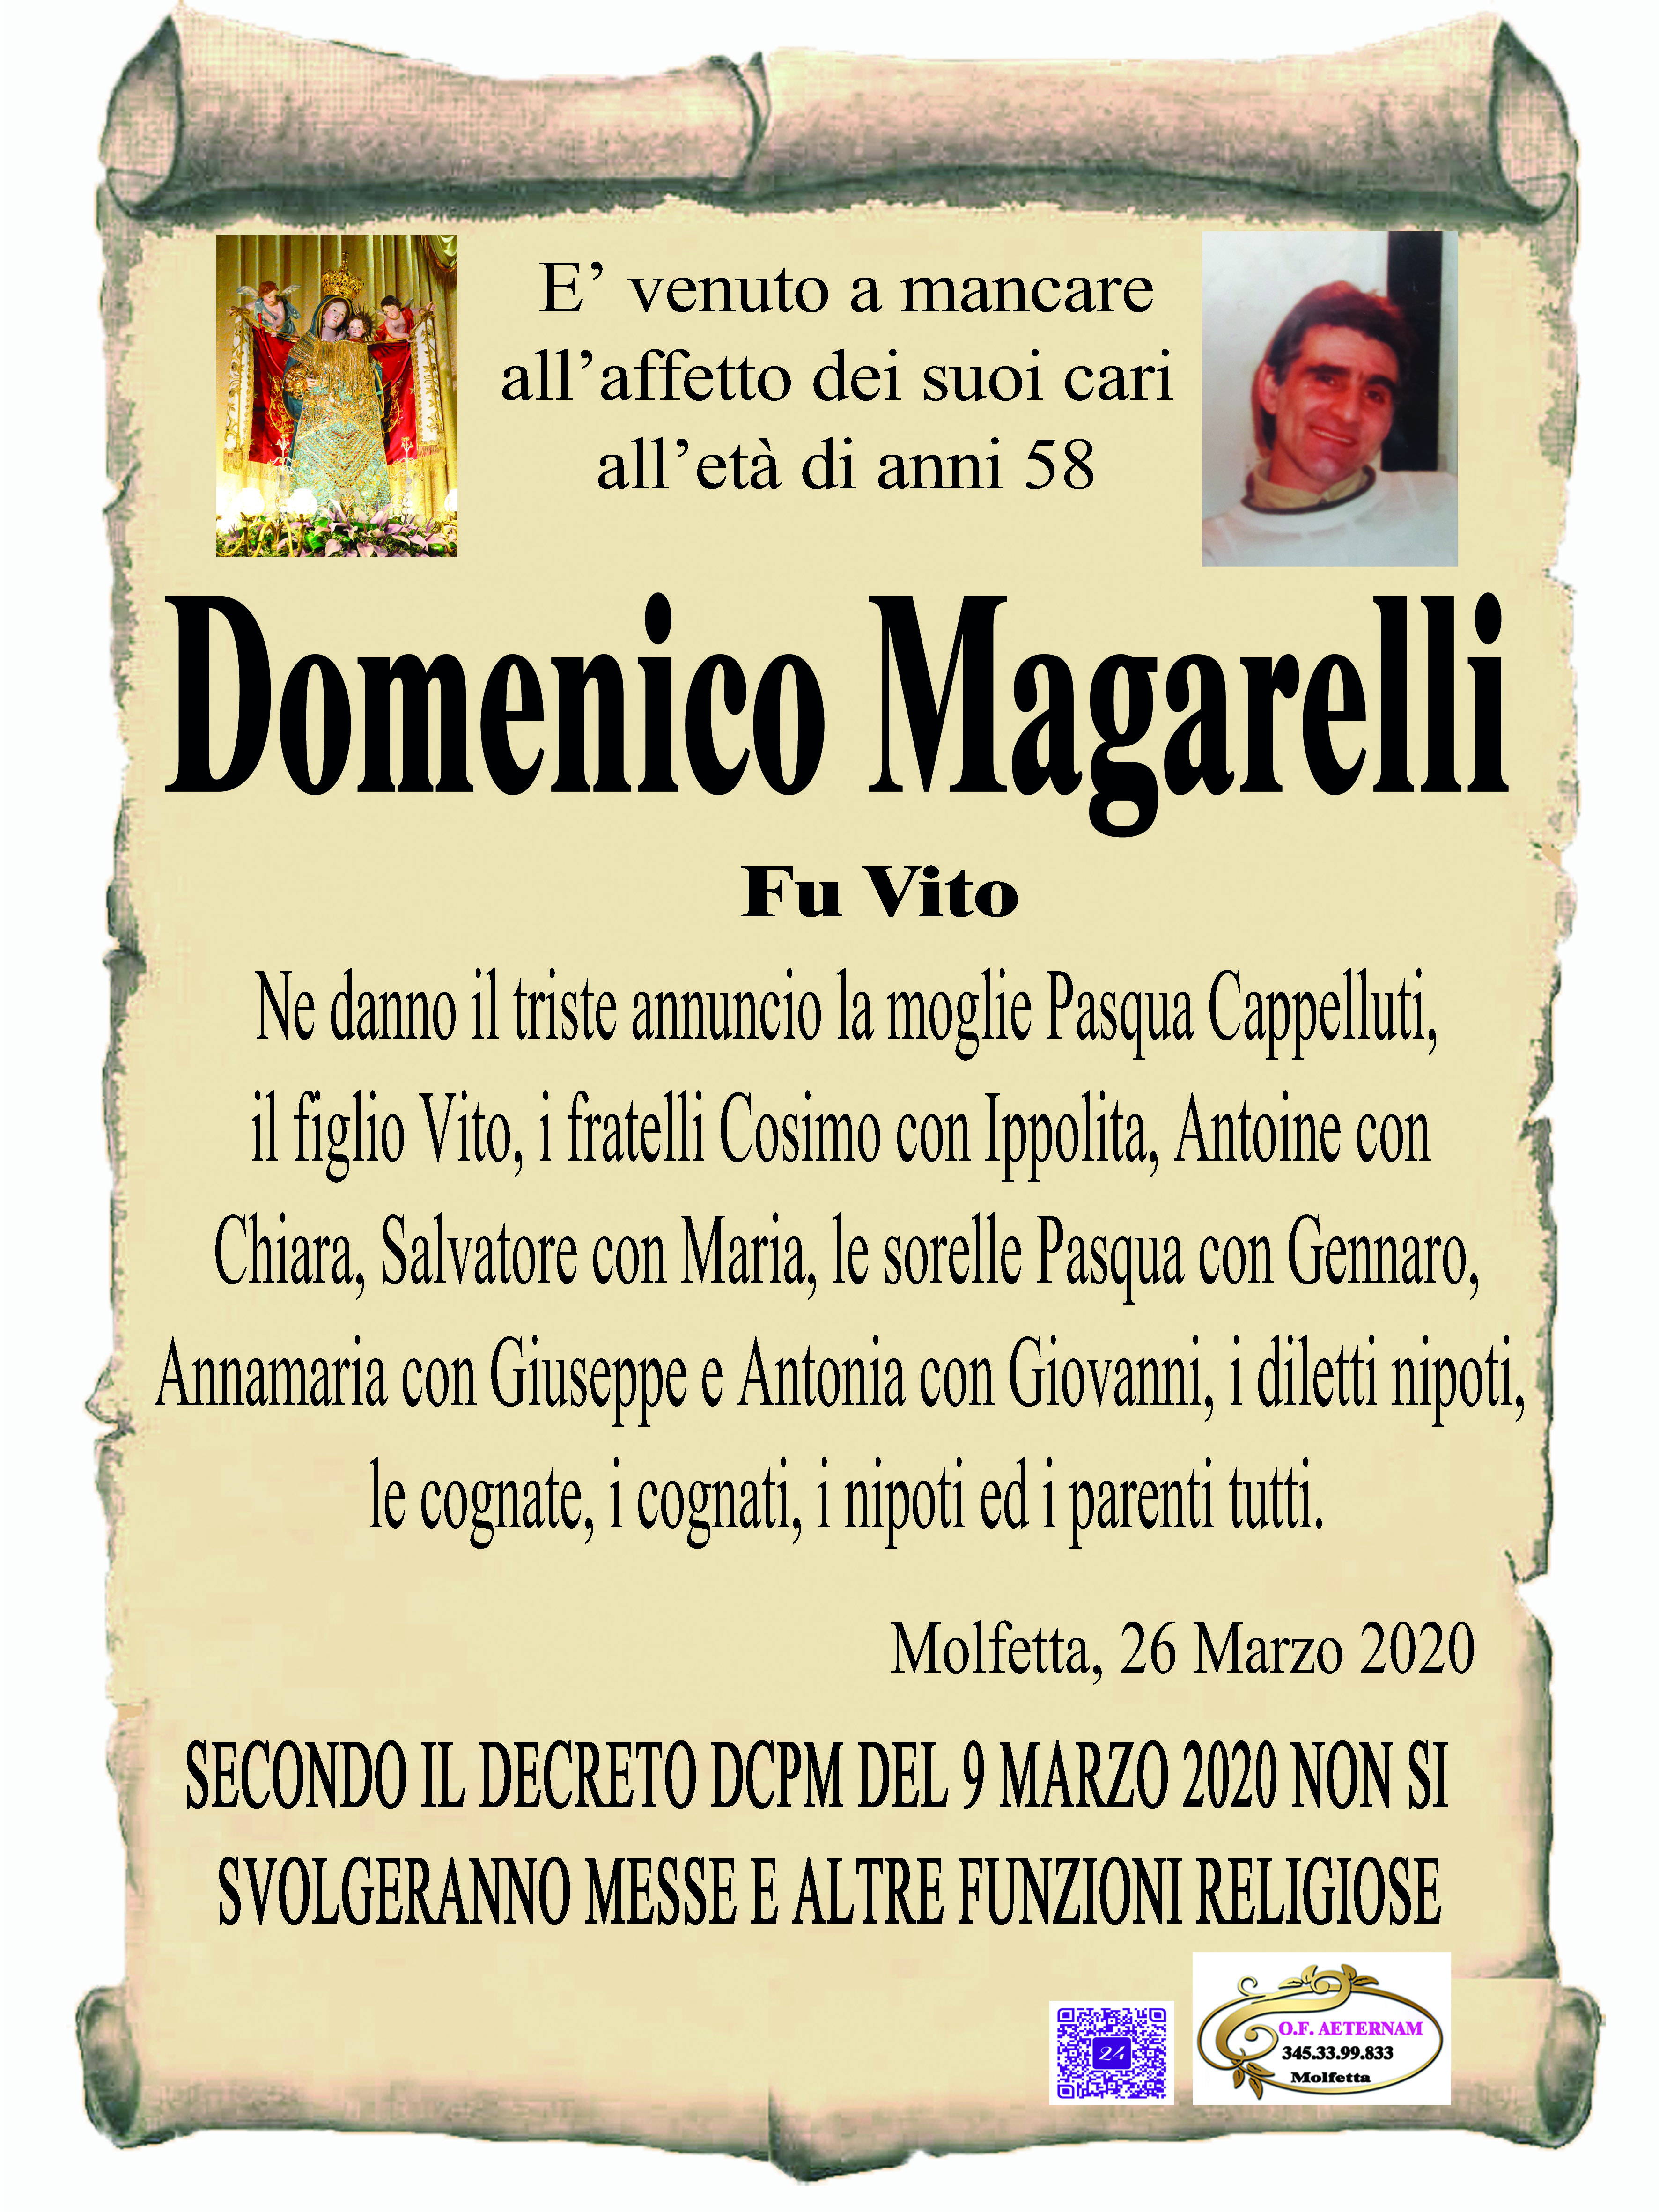 Domenico Magarelli